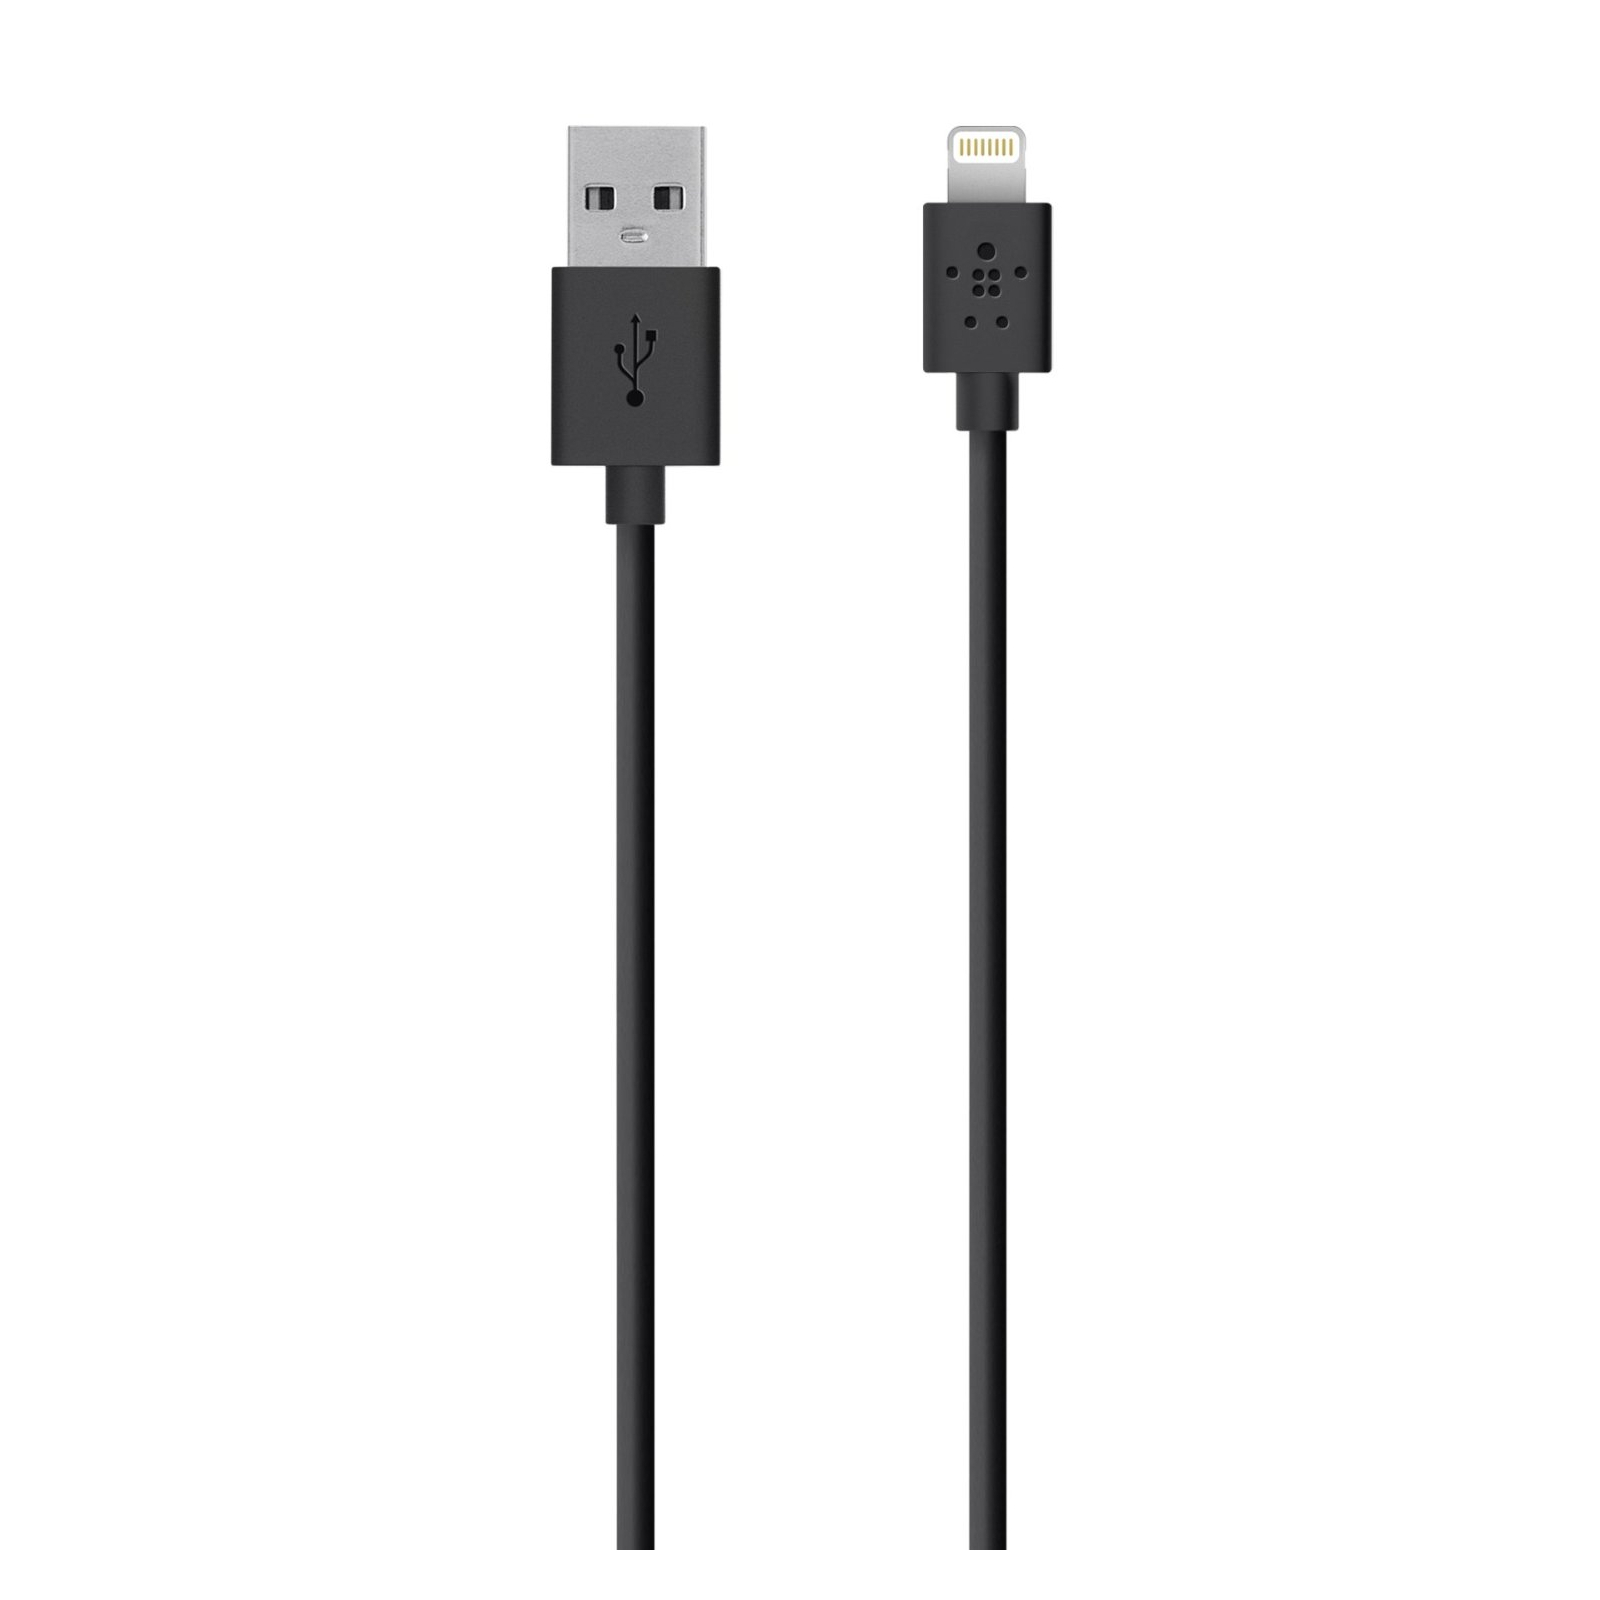 Дата кабель USB 2.0 AM to Lightning 2.0m Black Belkin (F8J023bt2M-BLK)